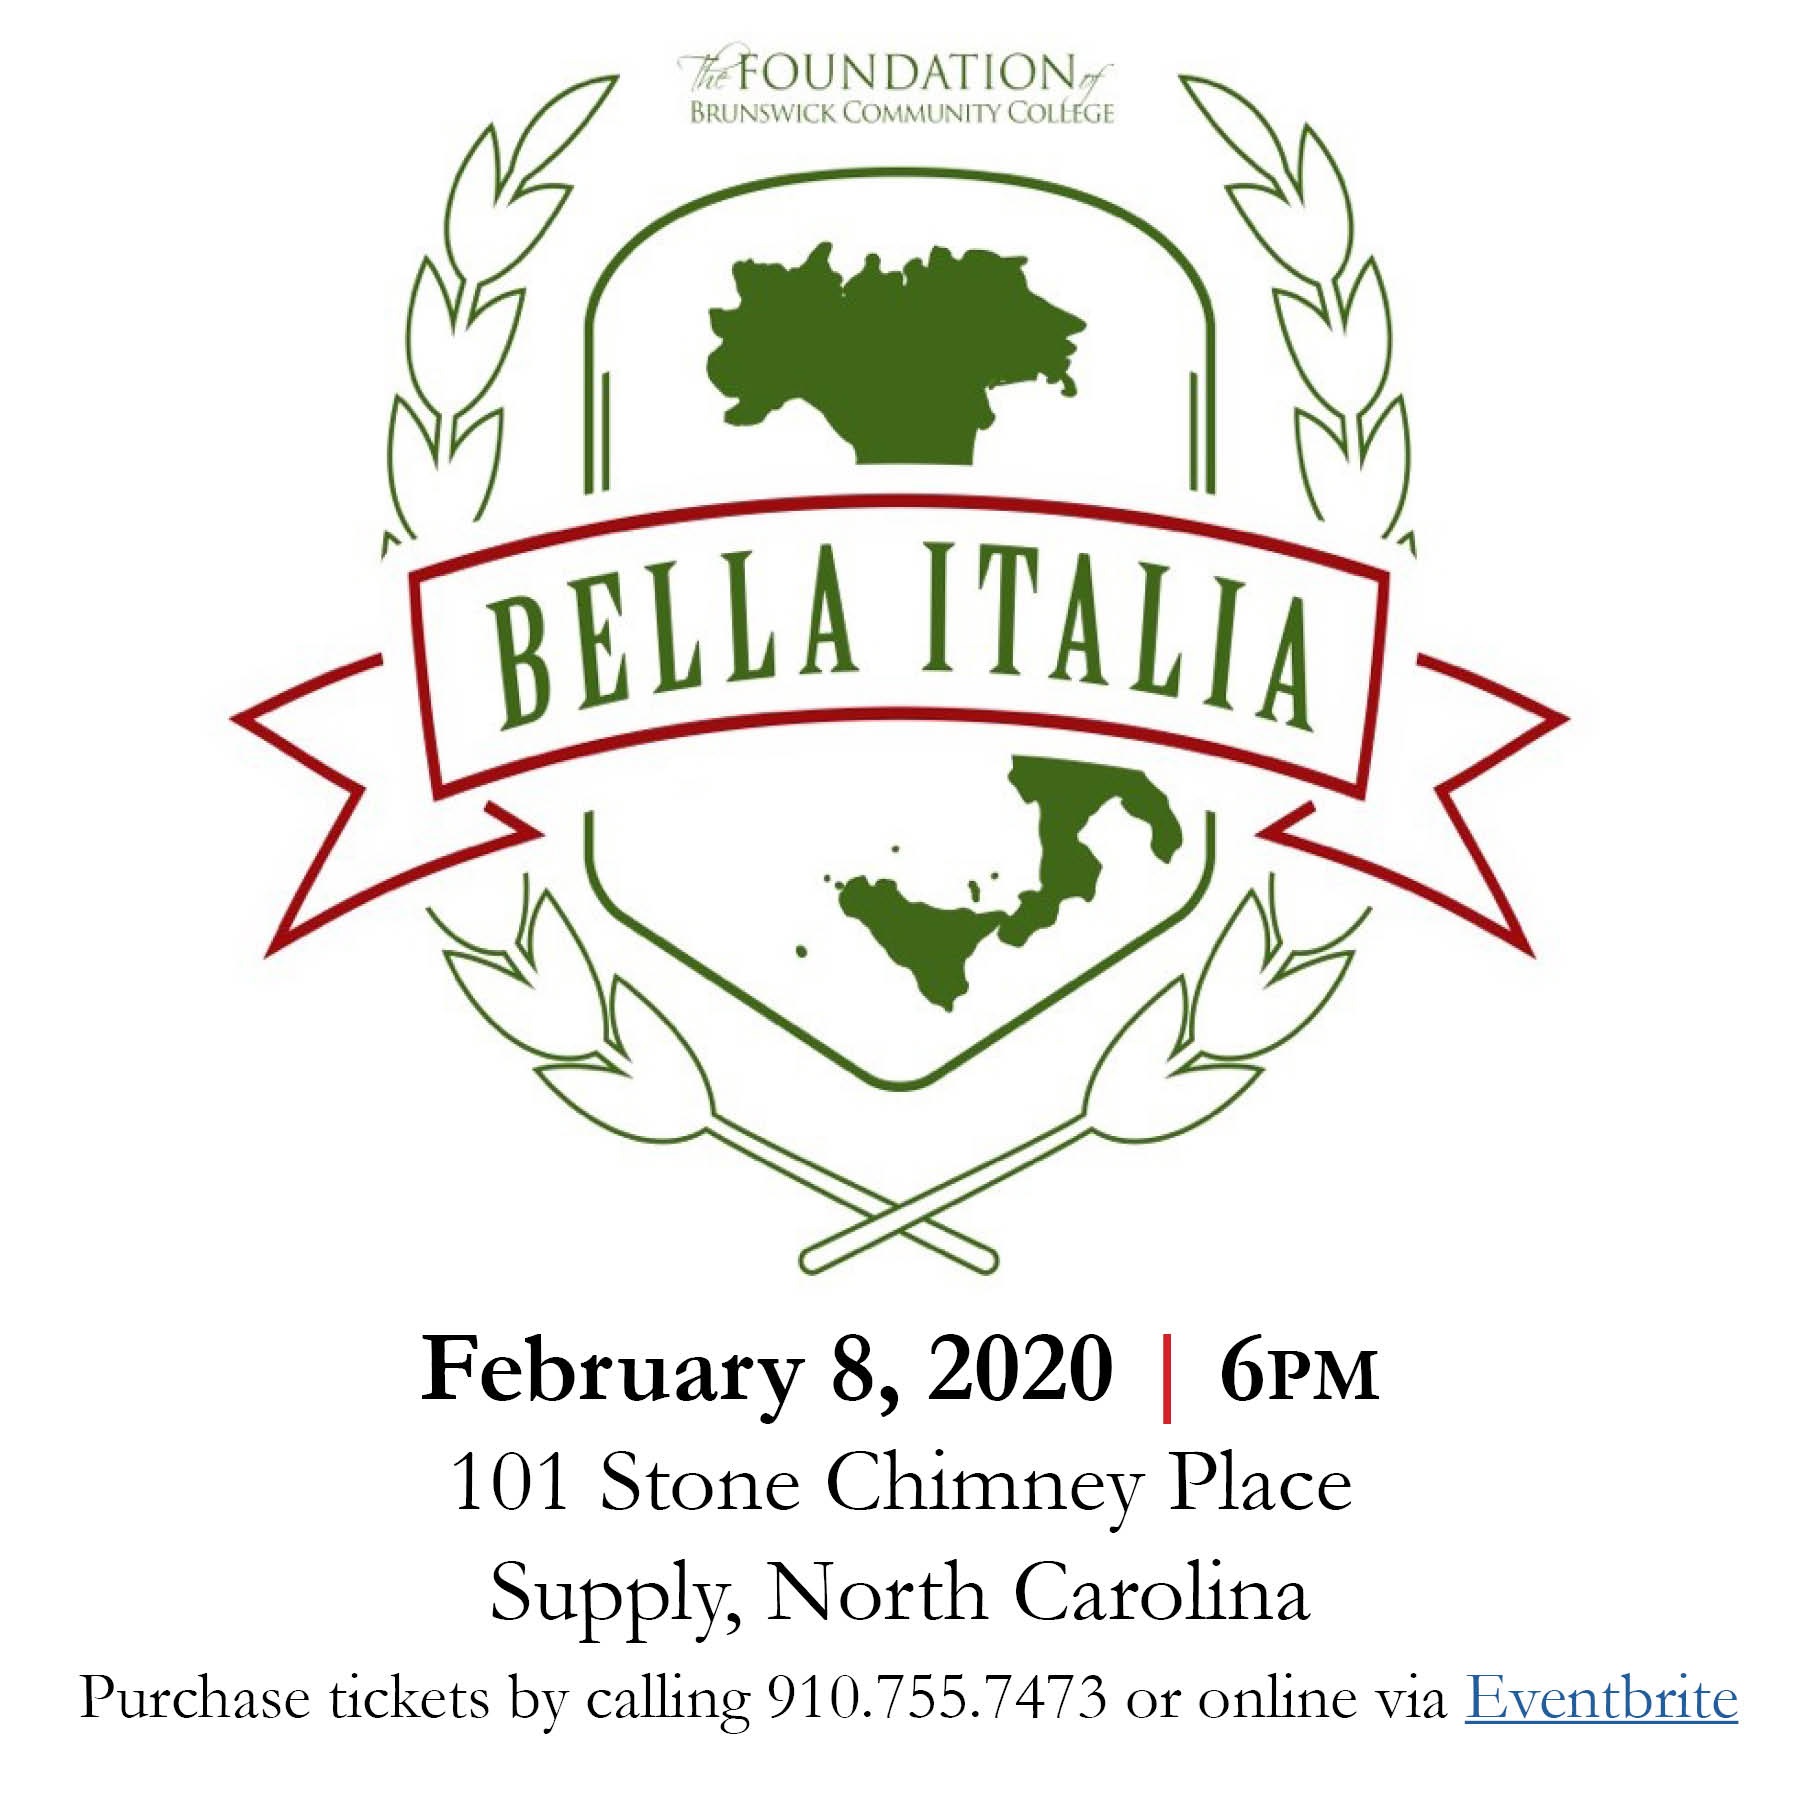 Brunswick Community College Foundation to Host 4th Annual “Bella Italia”